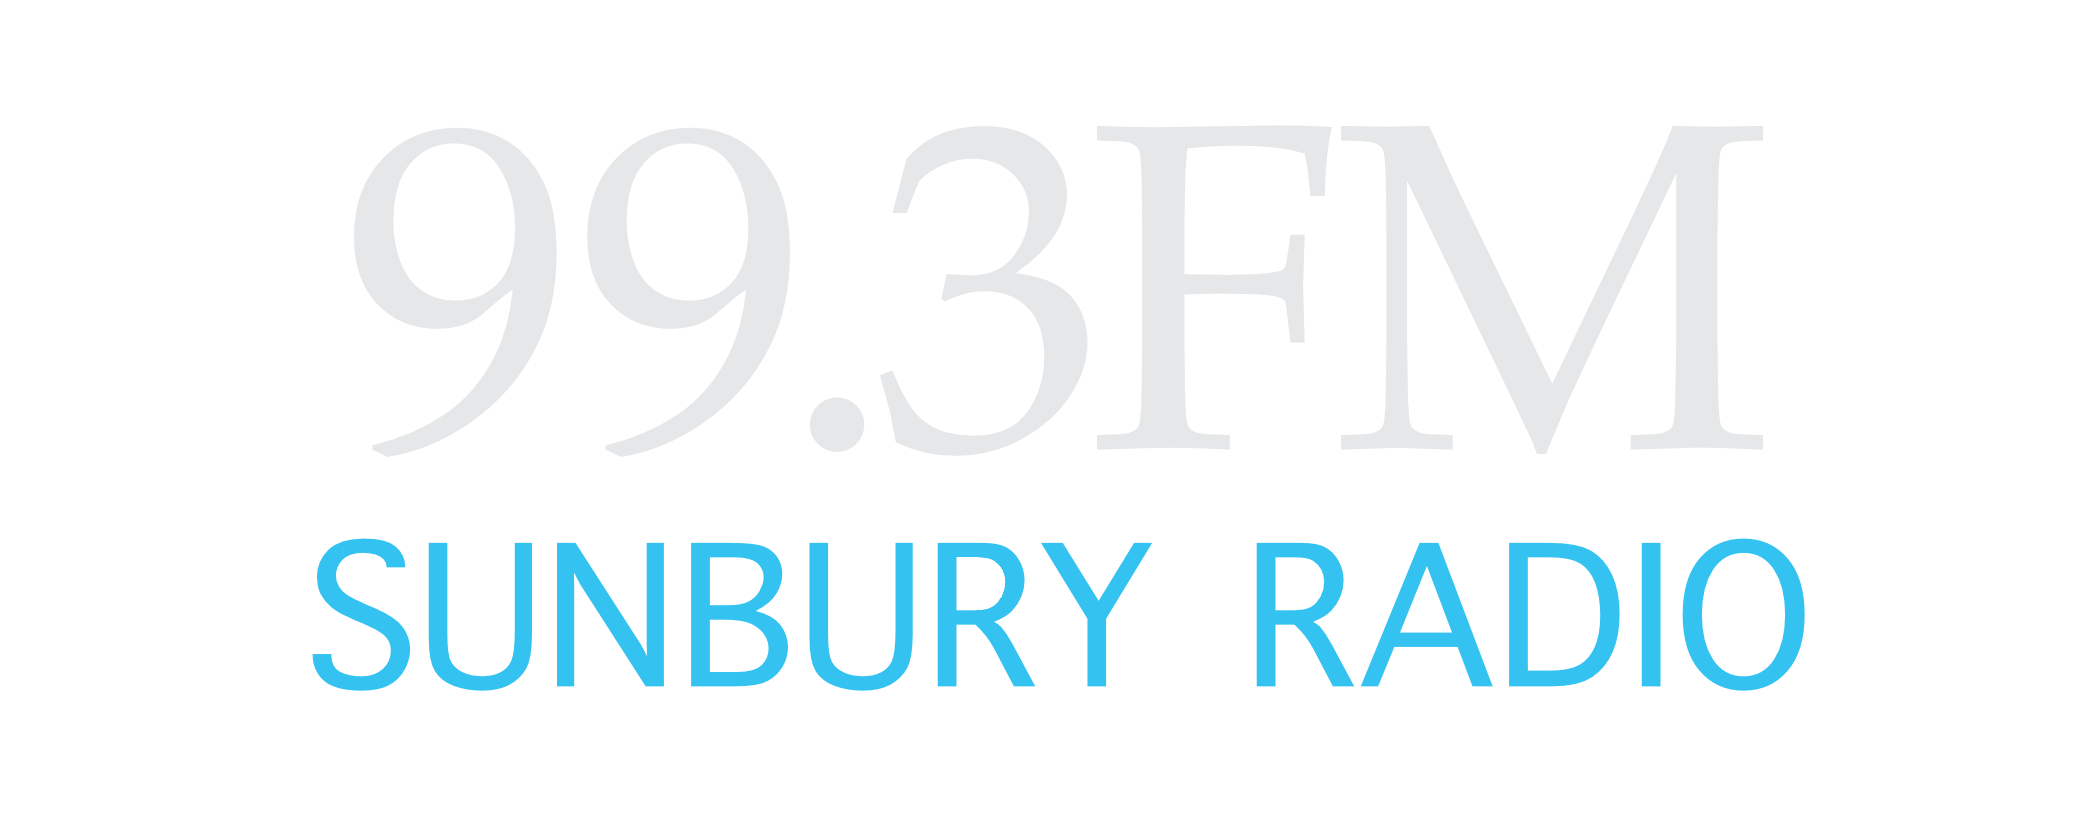 Sunbury Radio 99.3FM Melbourne